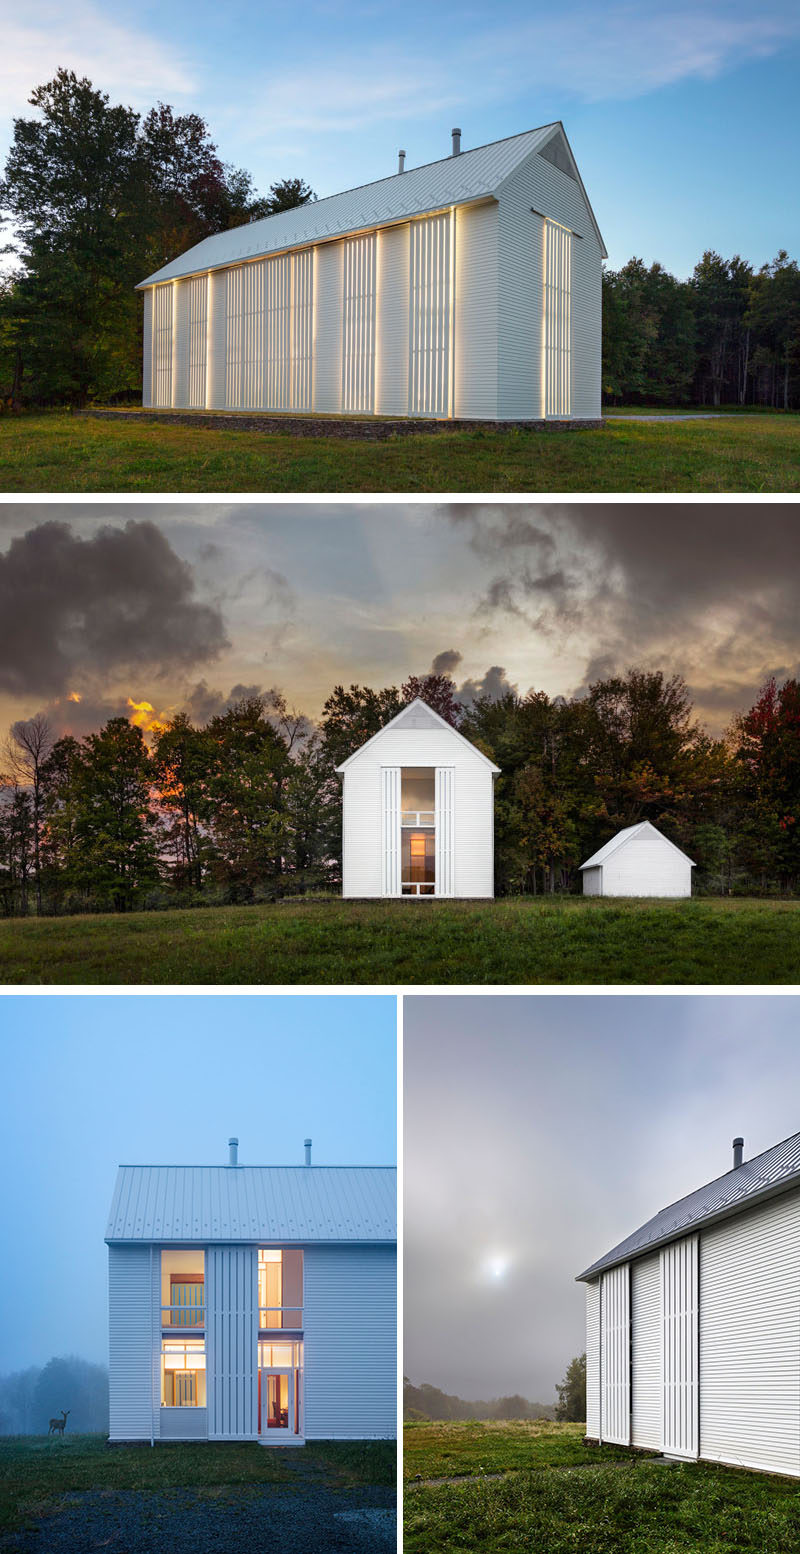 Компания Cutler Anderson Architects завершила строительство современного дома для большой семьи на ферме площадью 93 акра в северо-востоке Пенсильвании, которая была спроектирована так, чтобы вписаться в окружающее фермерское сообщество # Фермерский дом # Современная архитектура 